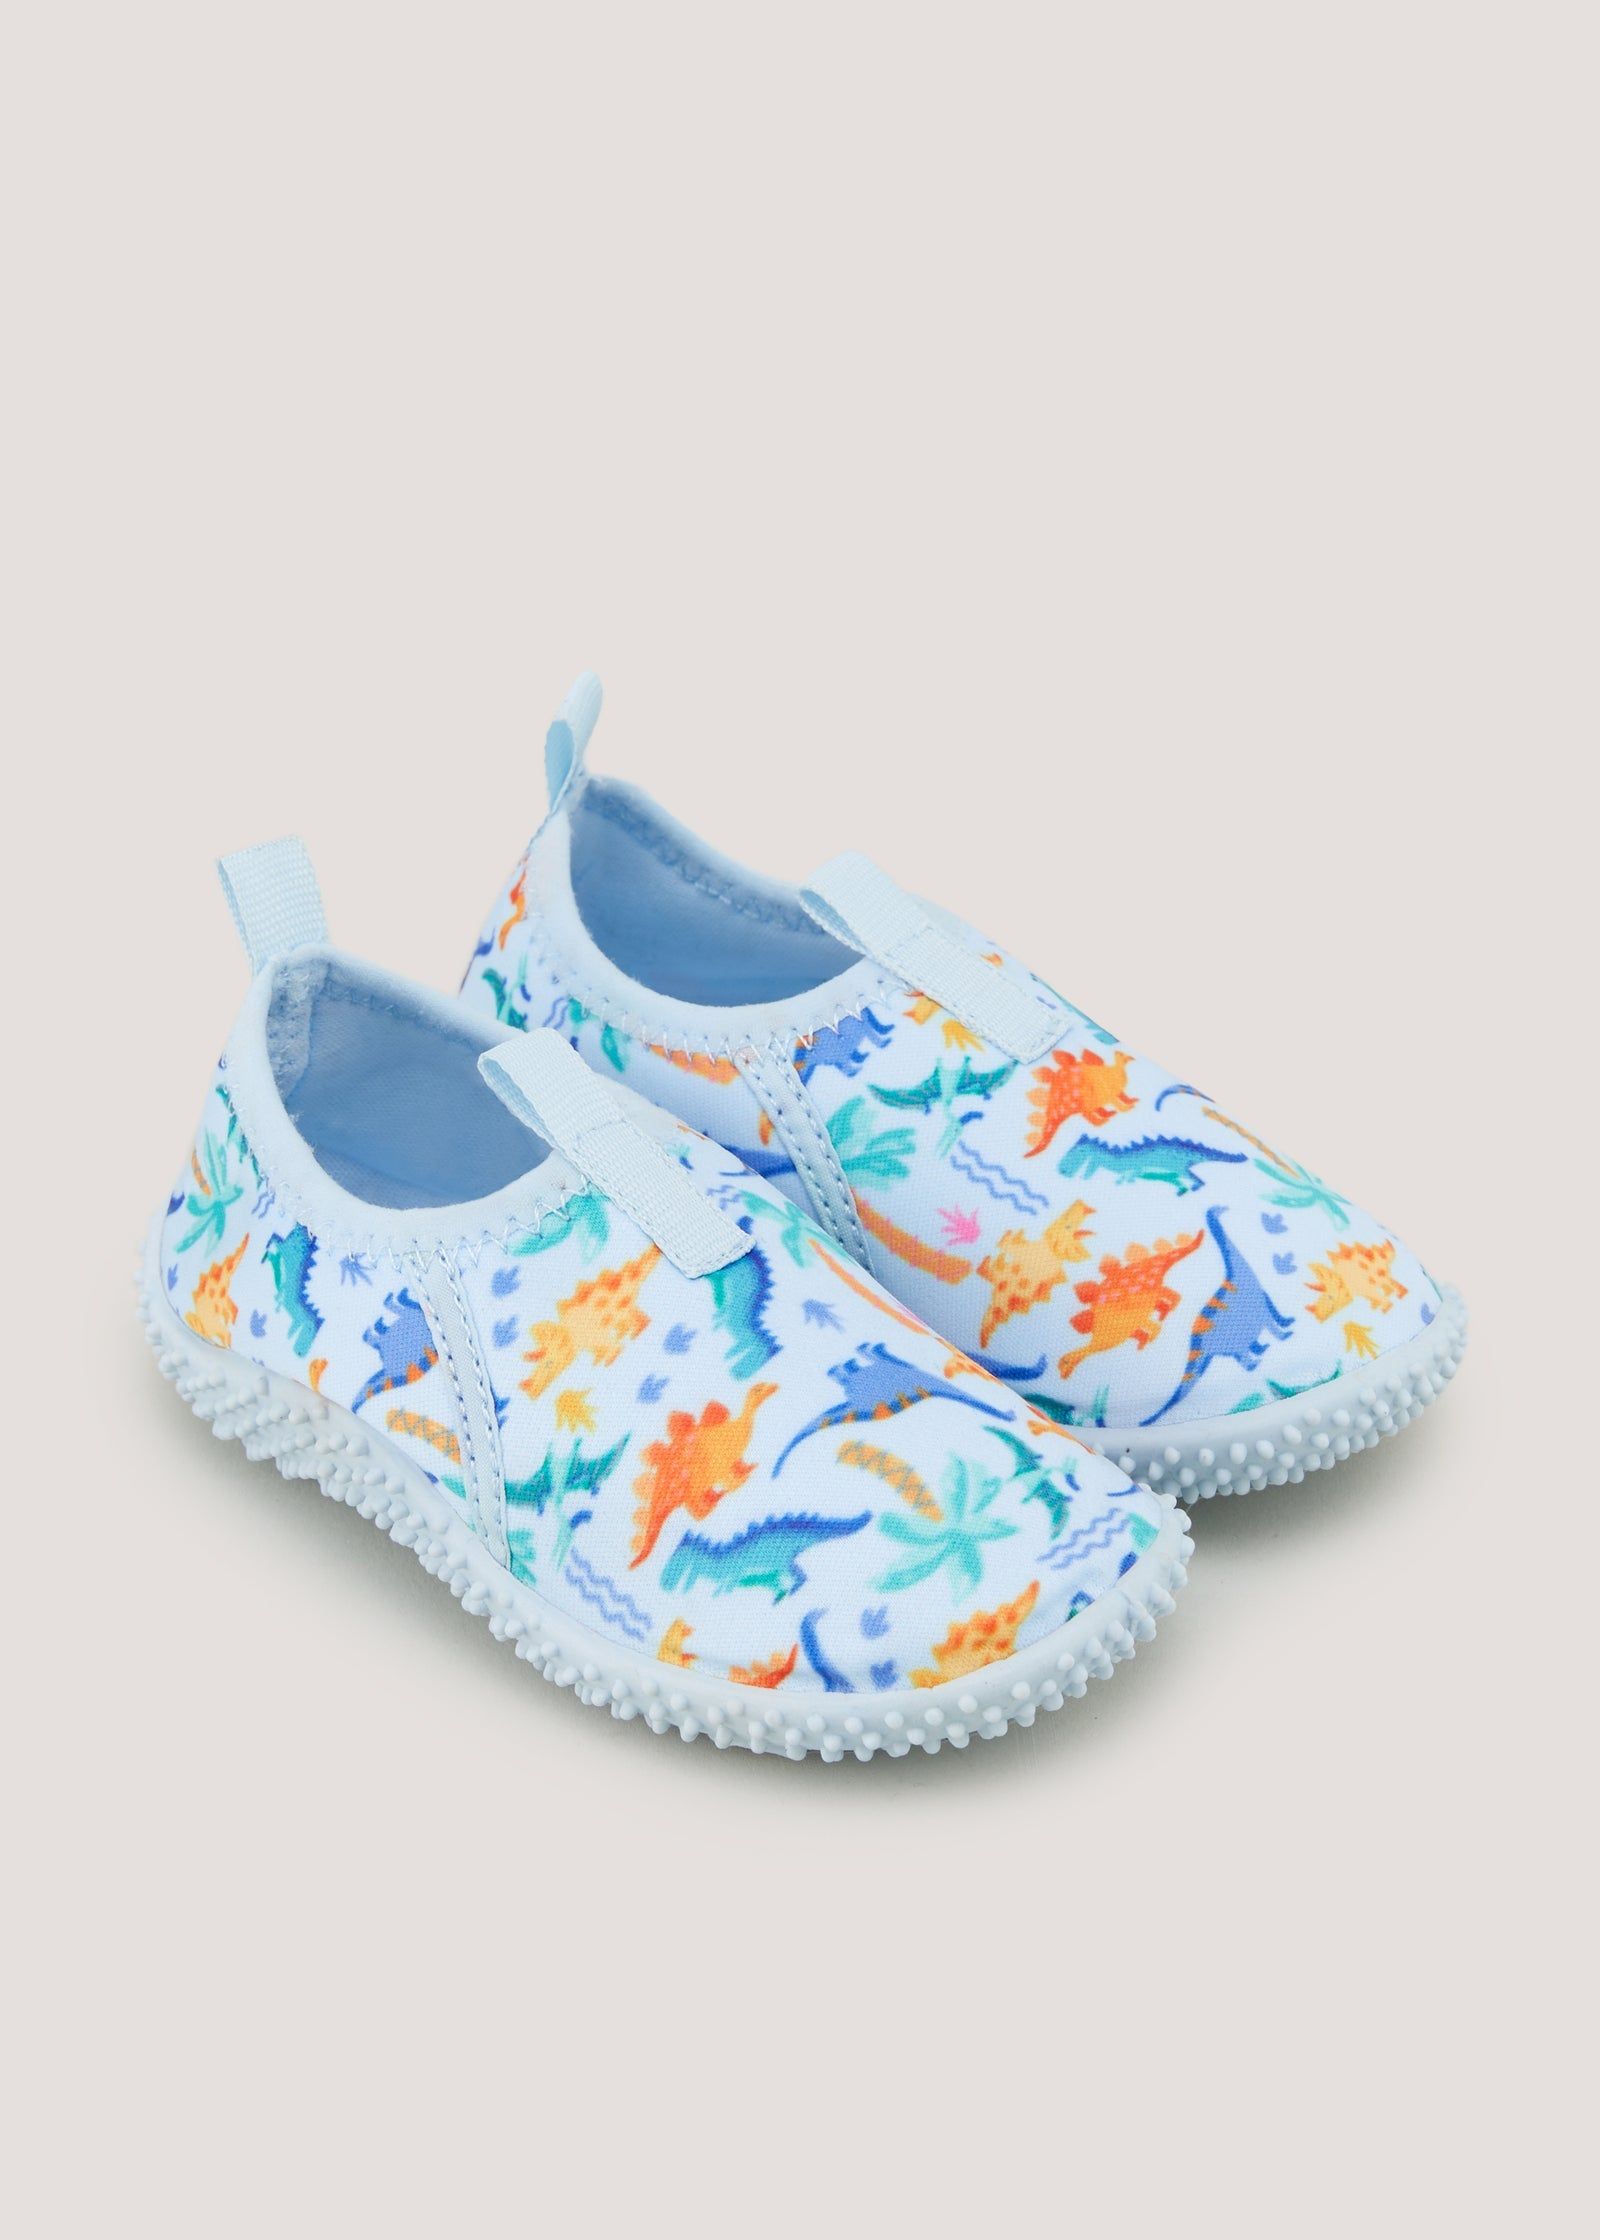 Buy Boys Blue Dinosaur Swim Shoes (Younger 4-12) - Blue - 4 Infants in  Qatar - bfab